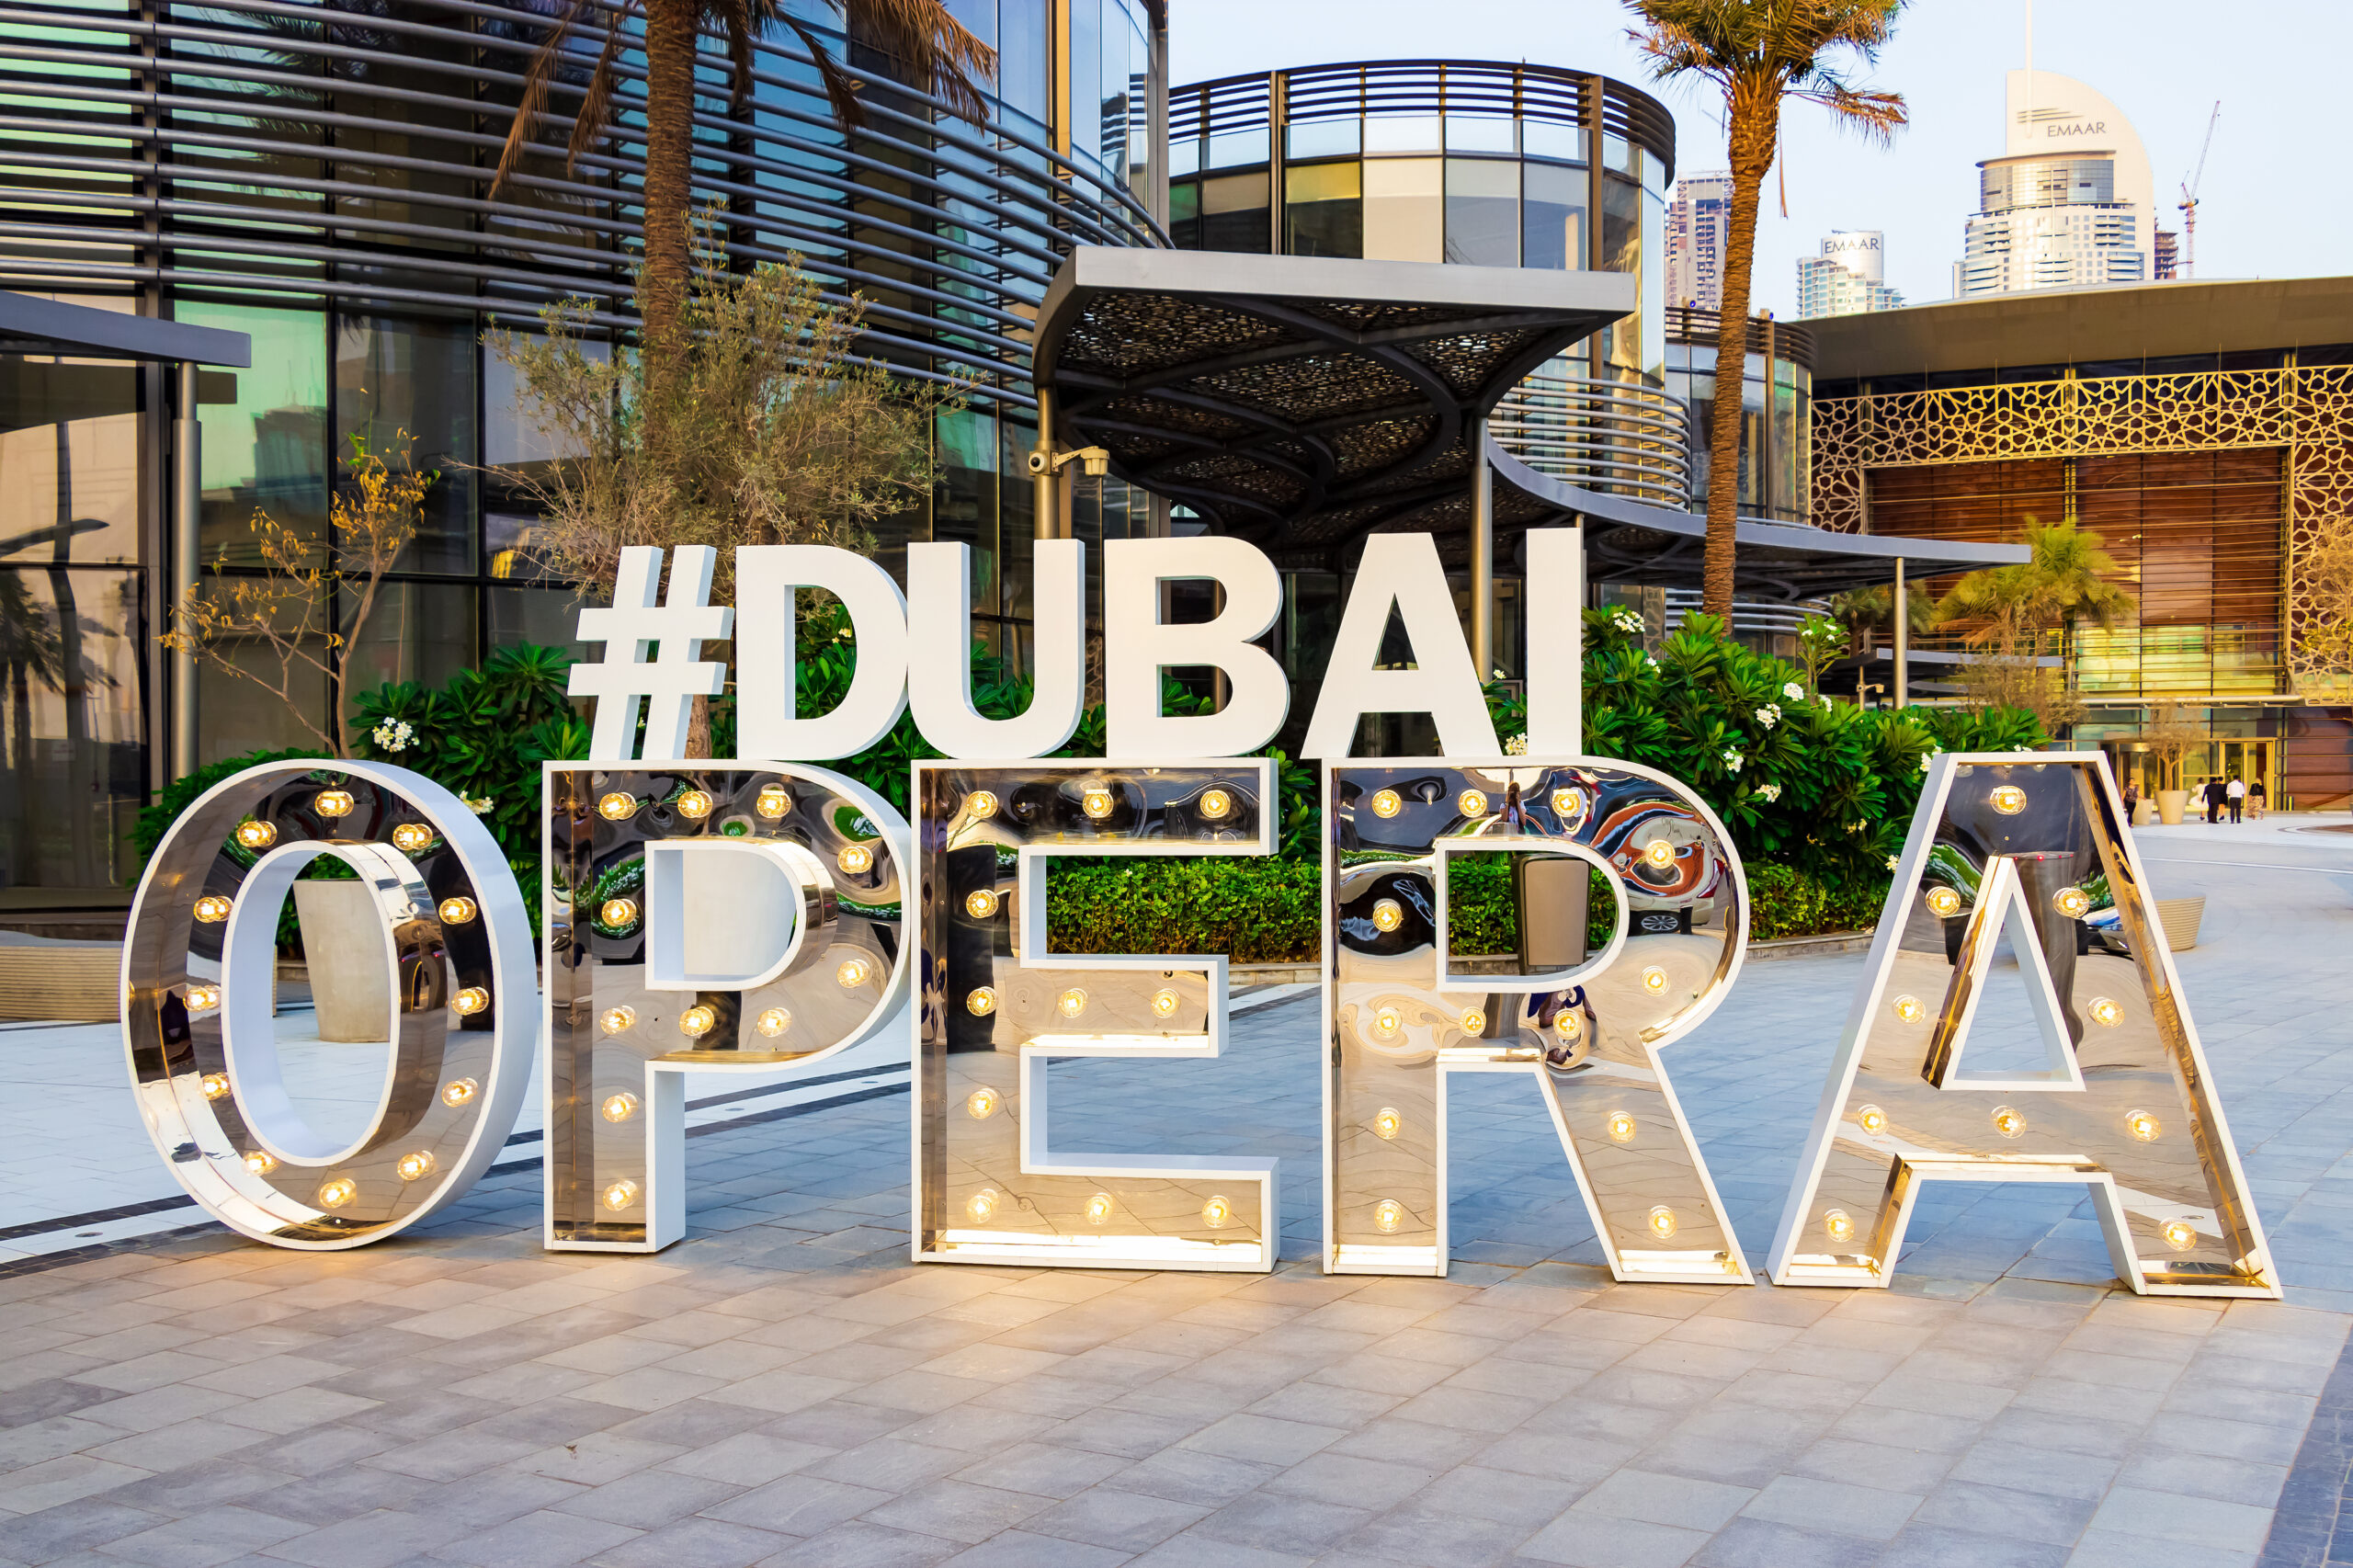 Dubai Opera - Dubai Opera sign